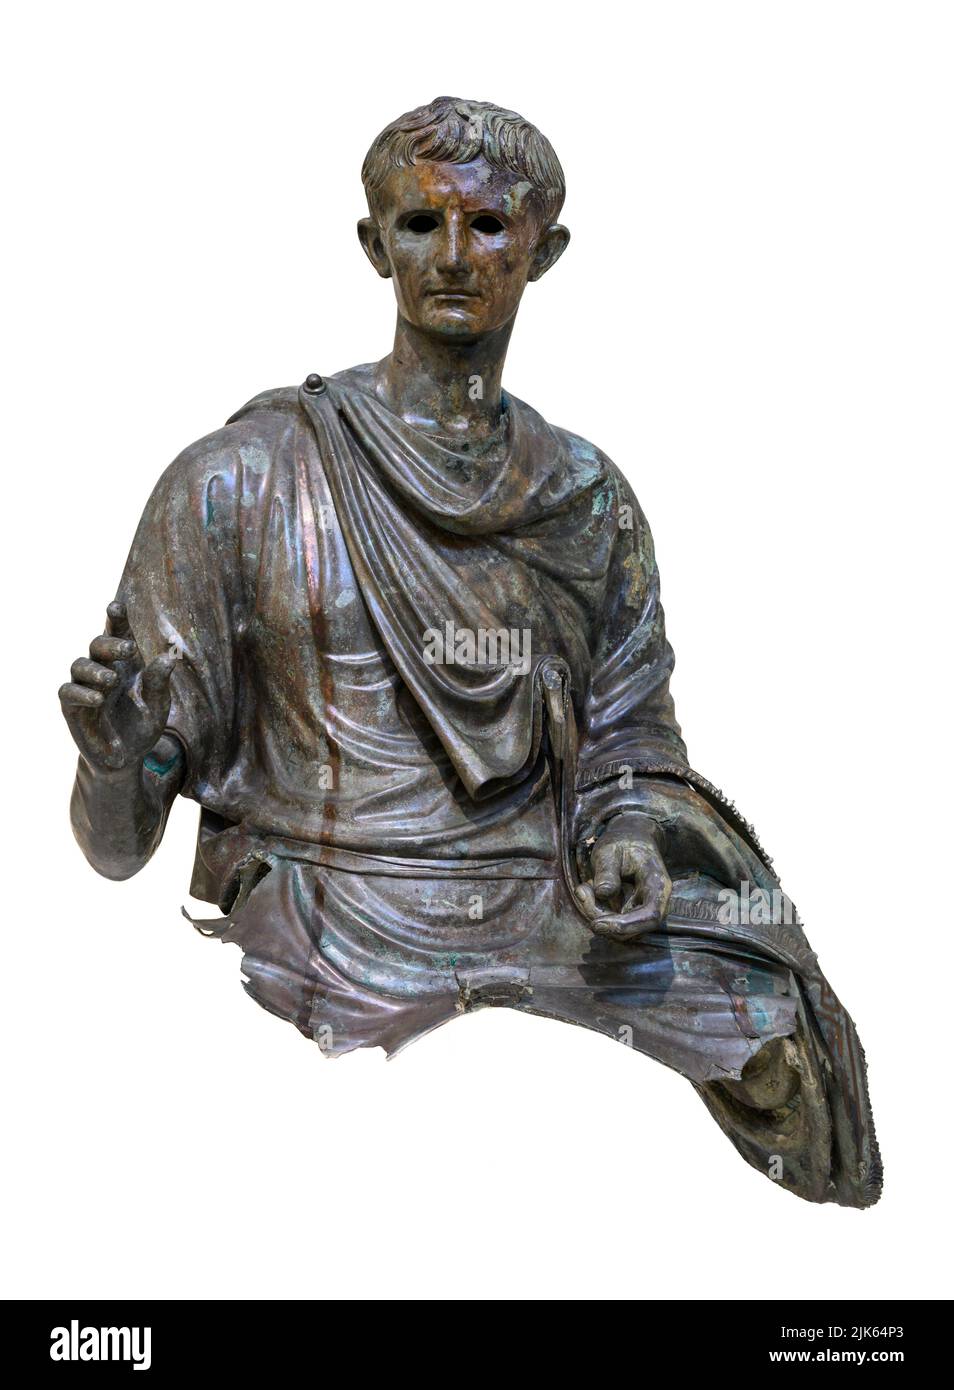 Estatua de bronce del emperador Augusto, primer emperador de Roma, gobernó 27 a.C. - 14 d.C. Se encuentra en el mar Egeo cerca de Euboea, alrededor de 12-10 aC. En la Nación Foto de stock